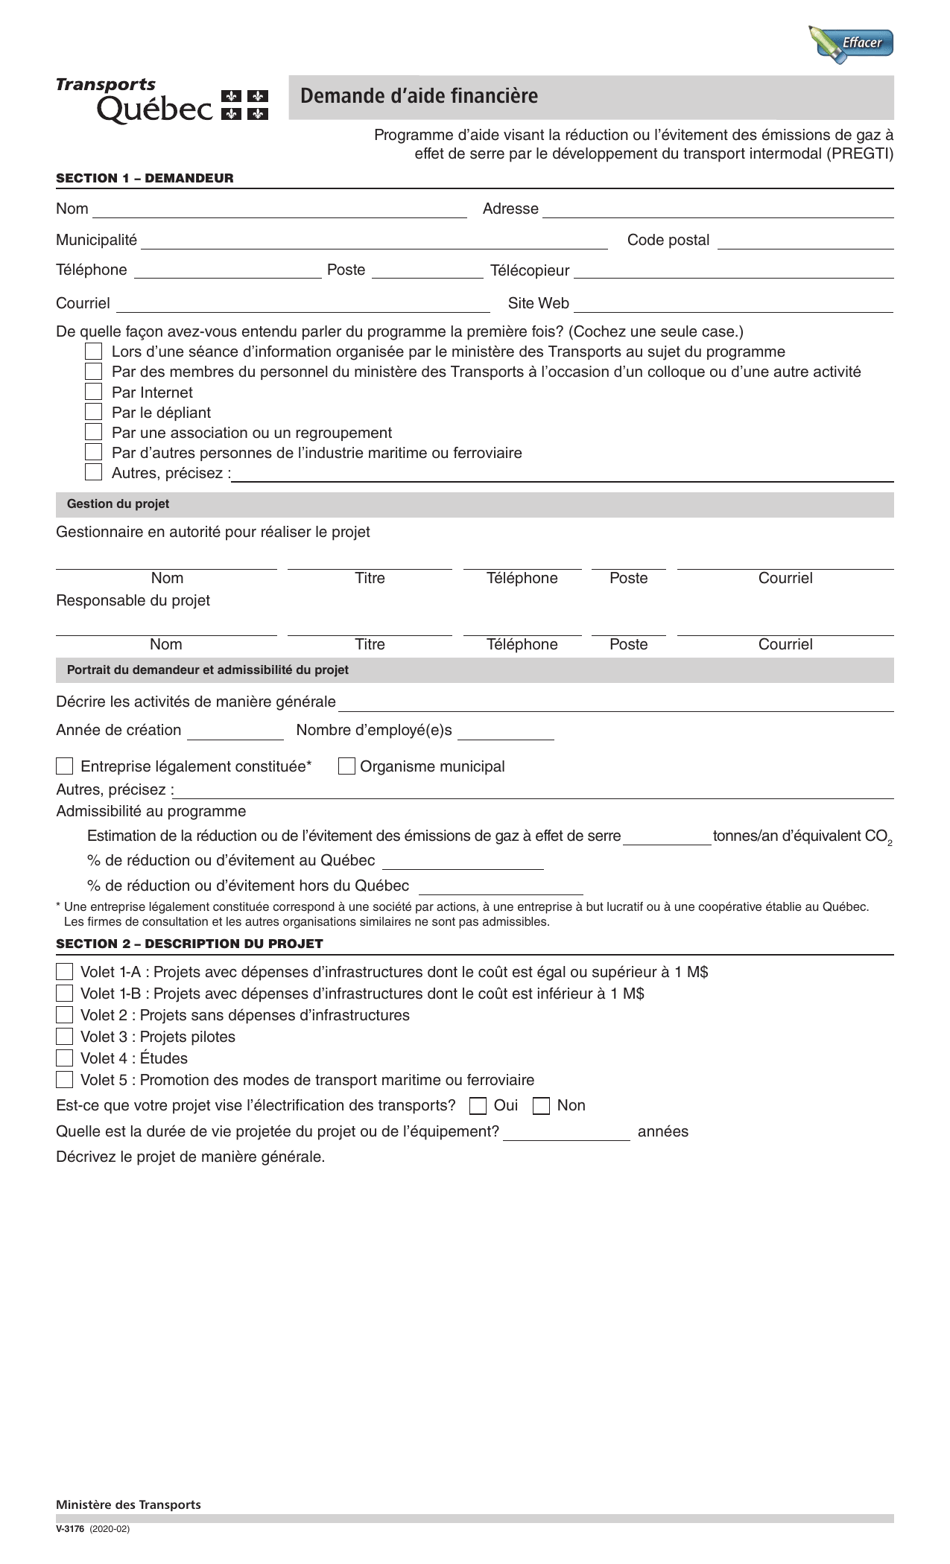 Forme V-3176 Demande Daide Financiere - Quebec, Canada (French), Page 1